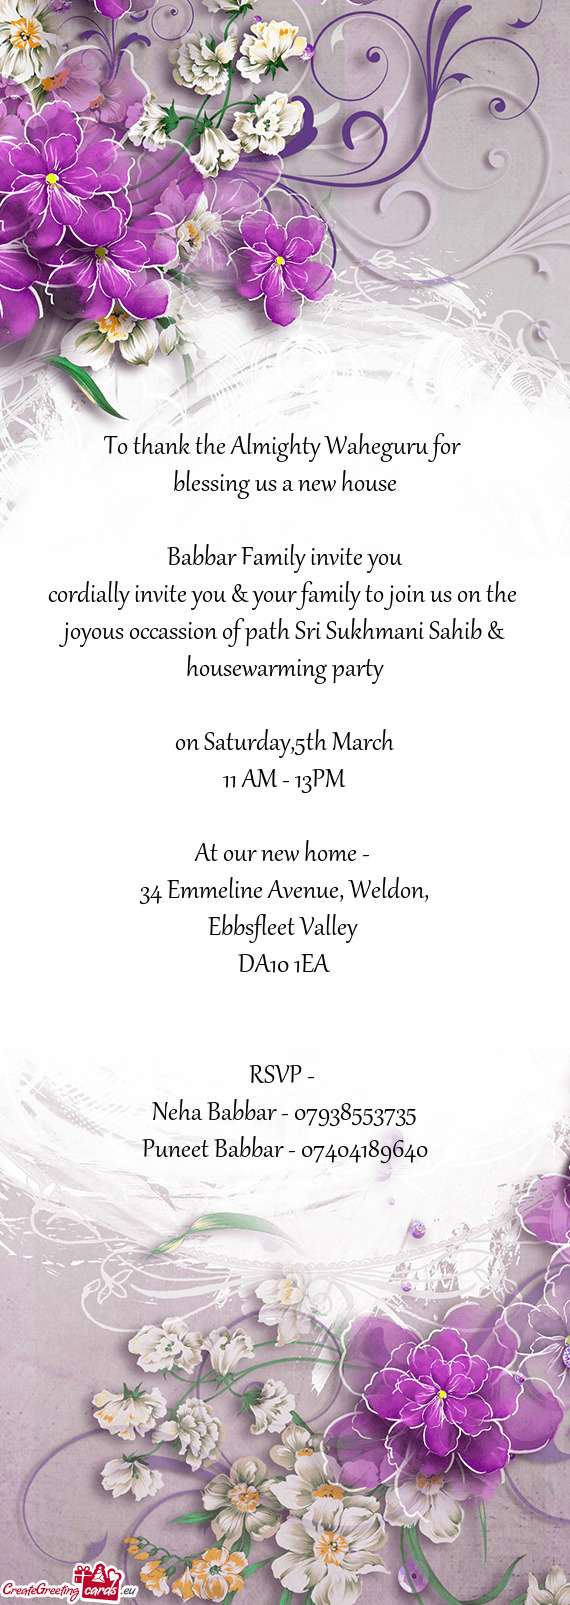 Babbar Family invite you